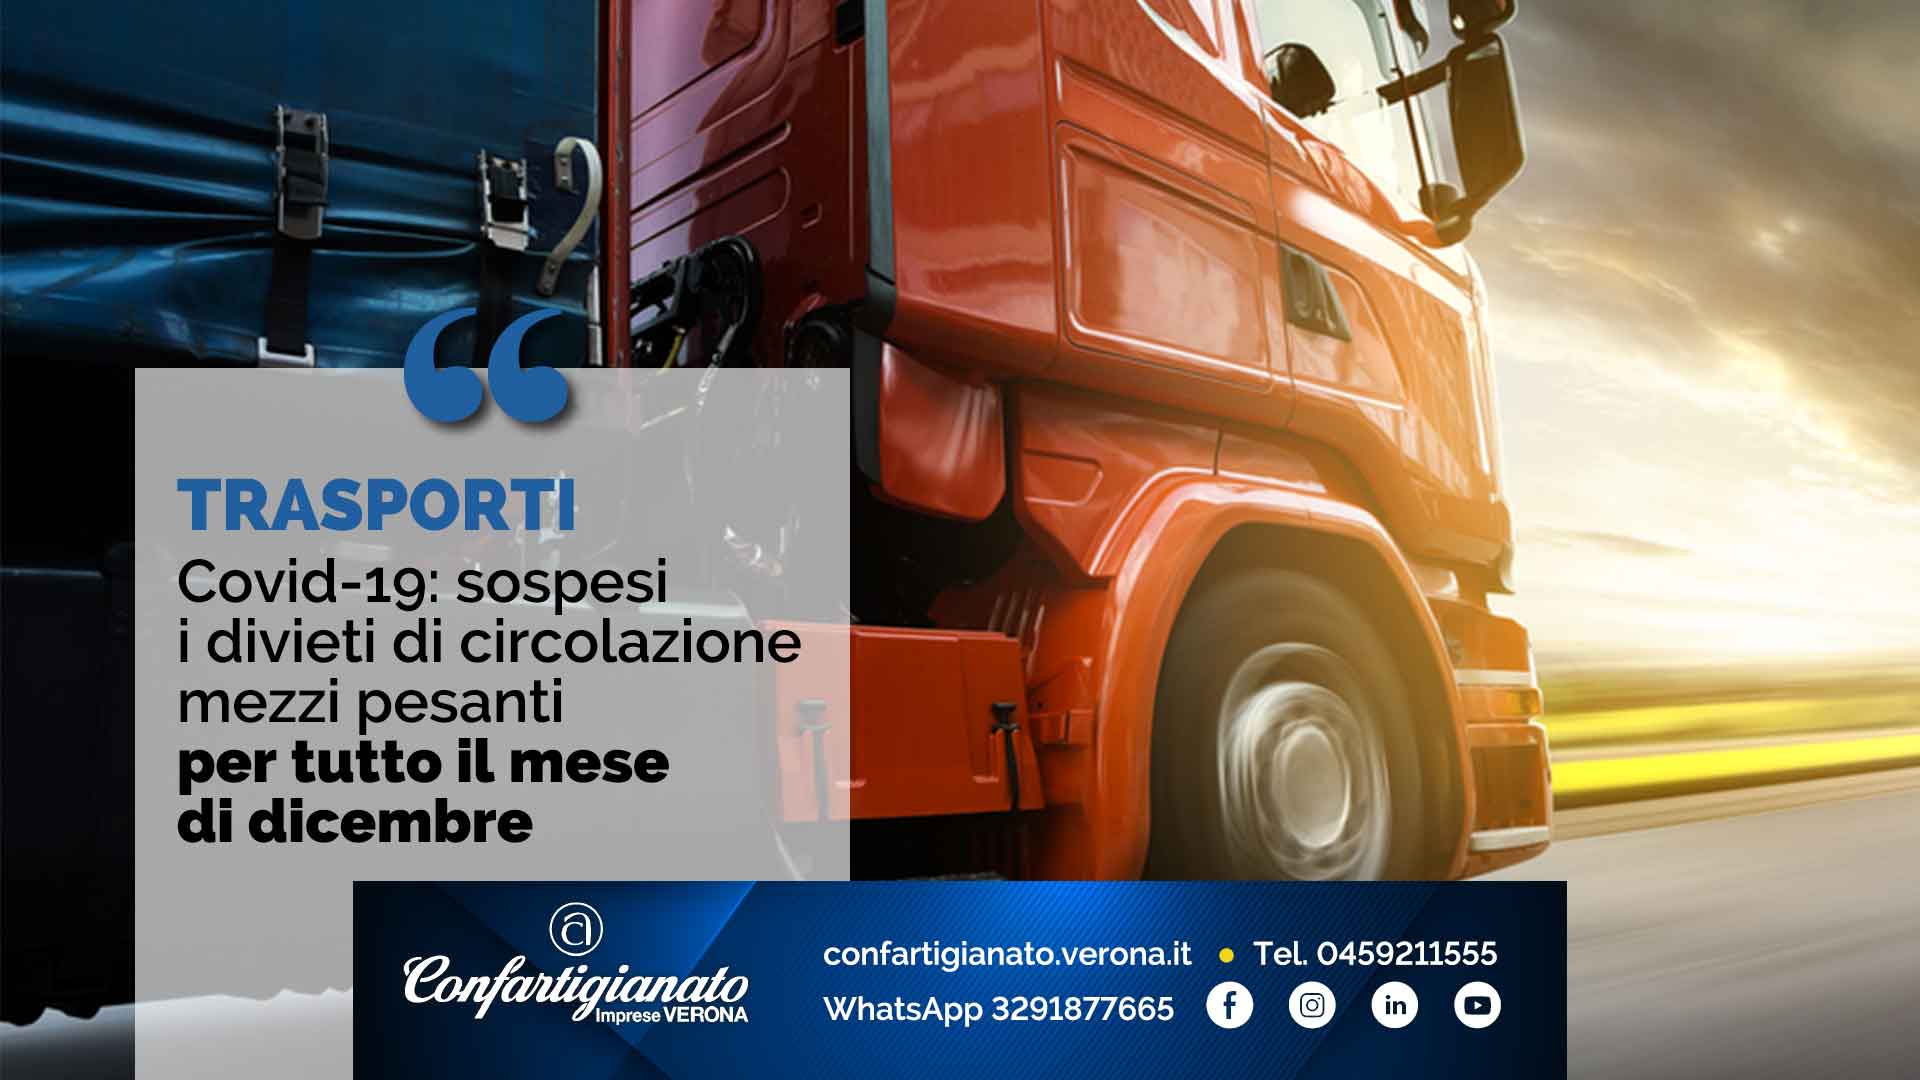 TRASPORTI – Covid-19: sospesi i divieti di circolazione mezzi pesanti per tutto il mese di dicembre